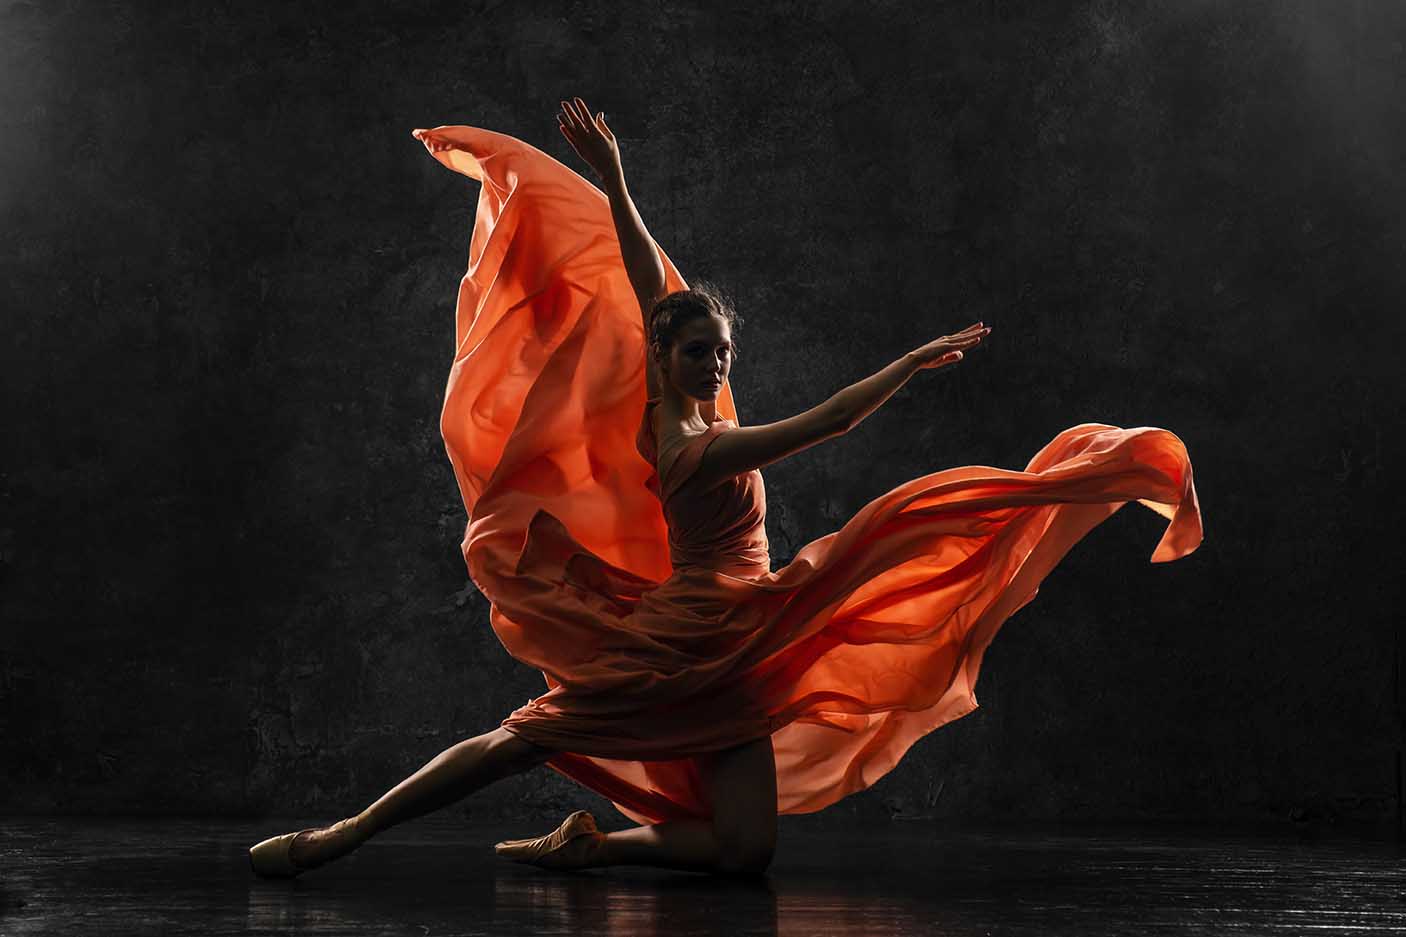 一个年轻的芭蕾舞演员的剪影照片穿着长桃红色连衣裙，足尖鞋与丝带。